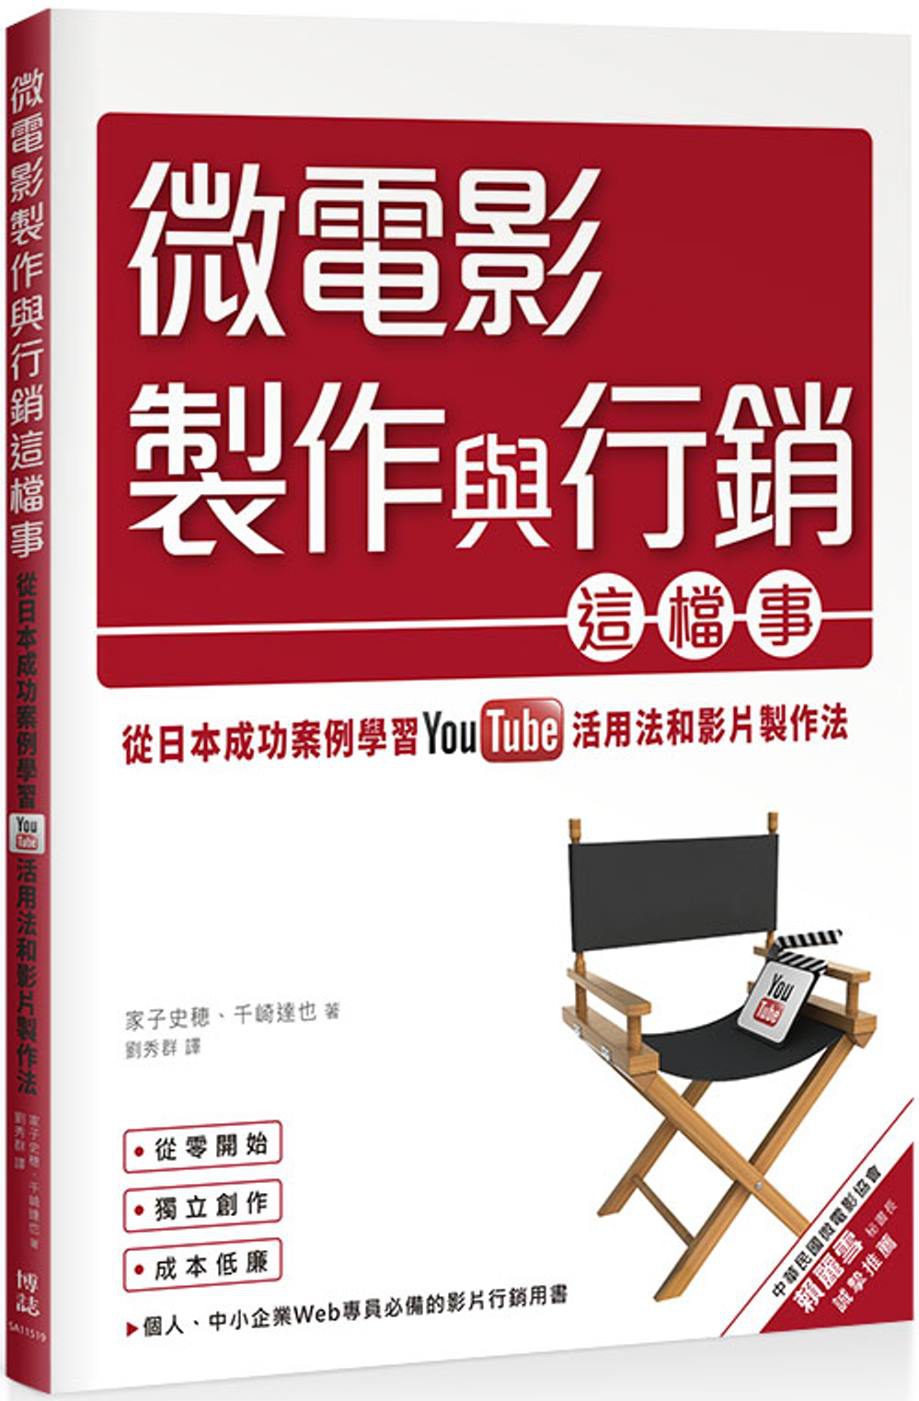 微電影製作與行銷這檔事：從日本成功案例學習YouTube活用法與影片製作法